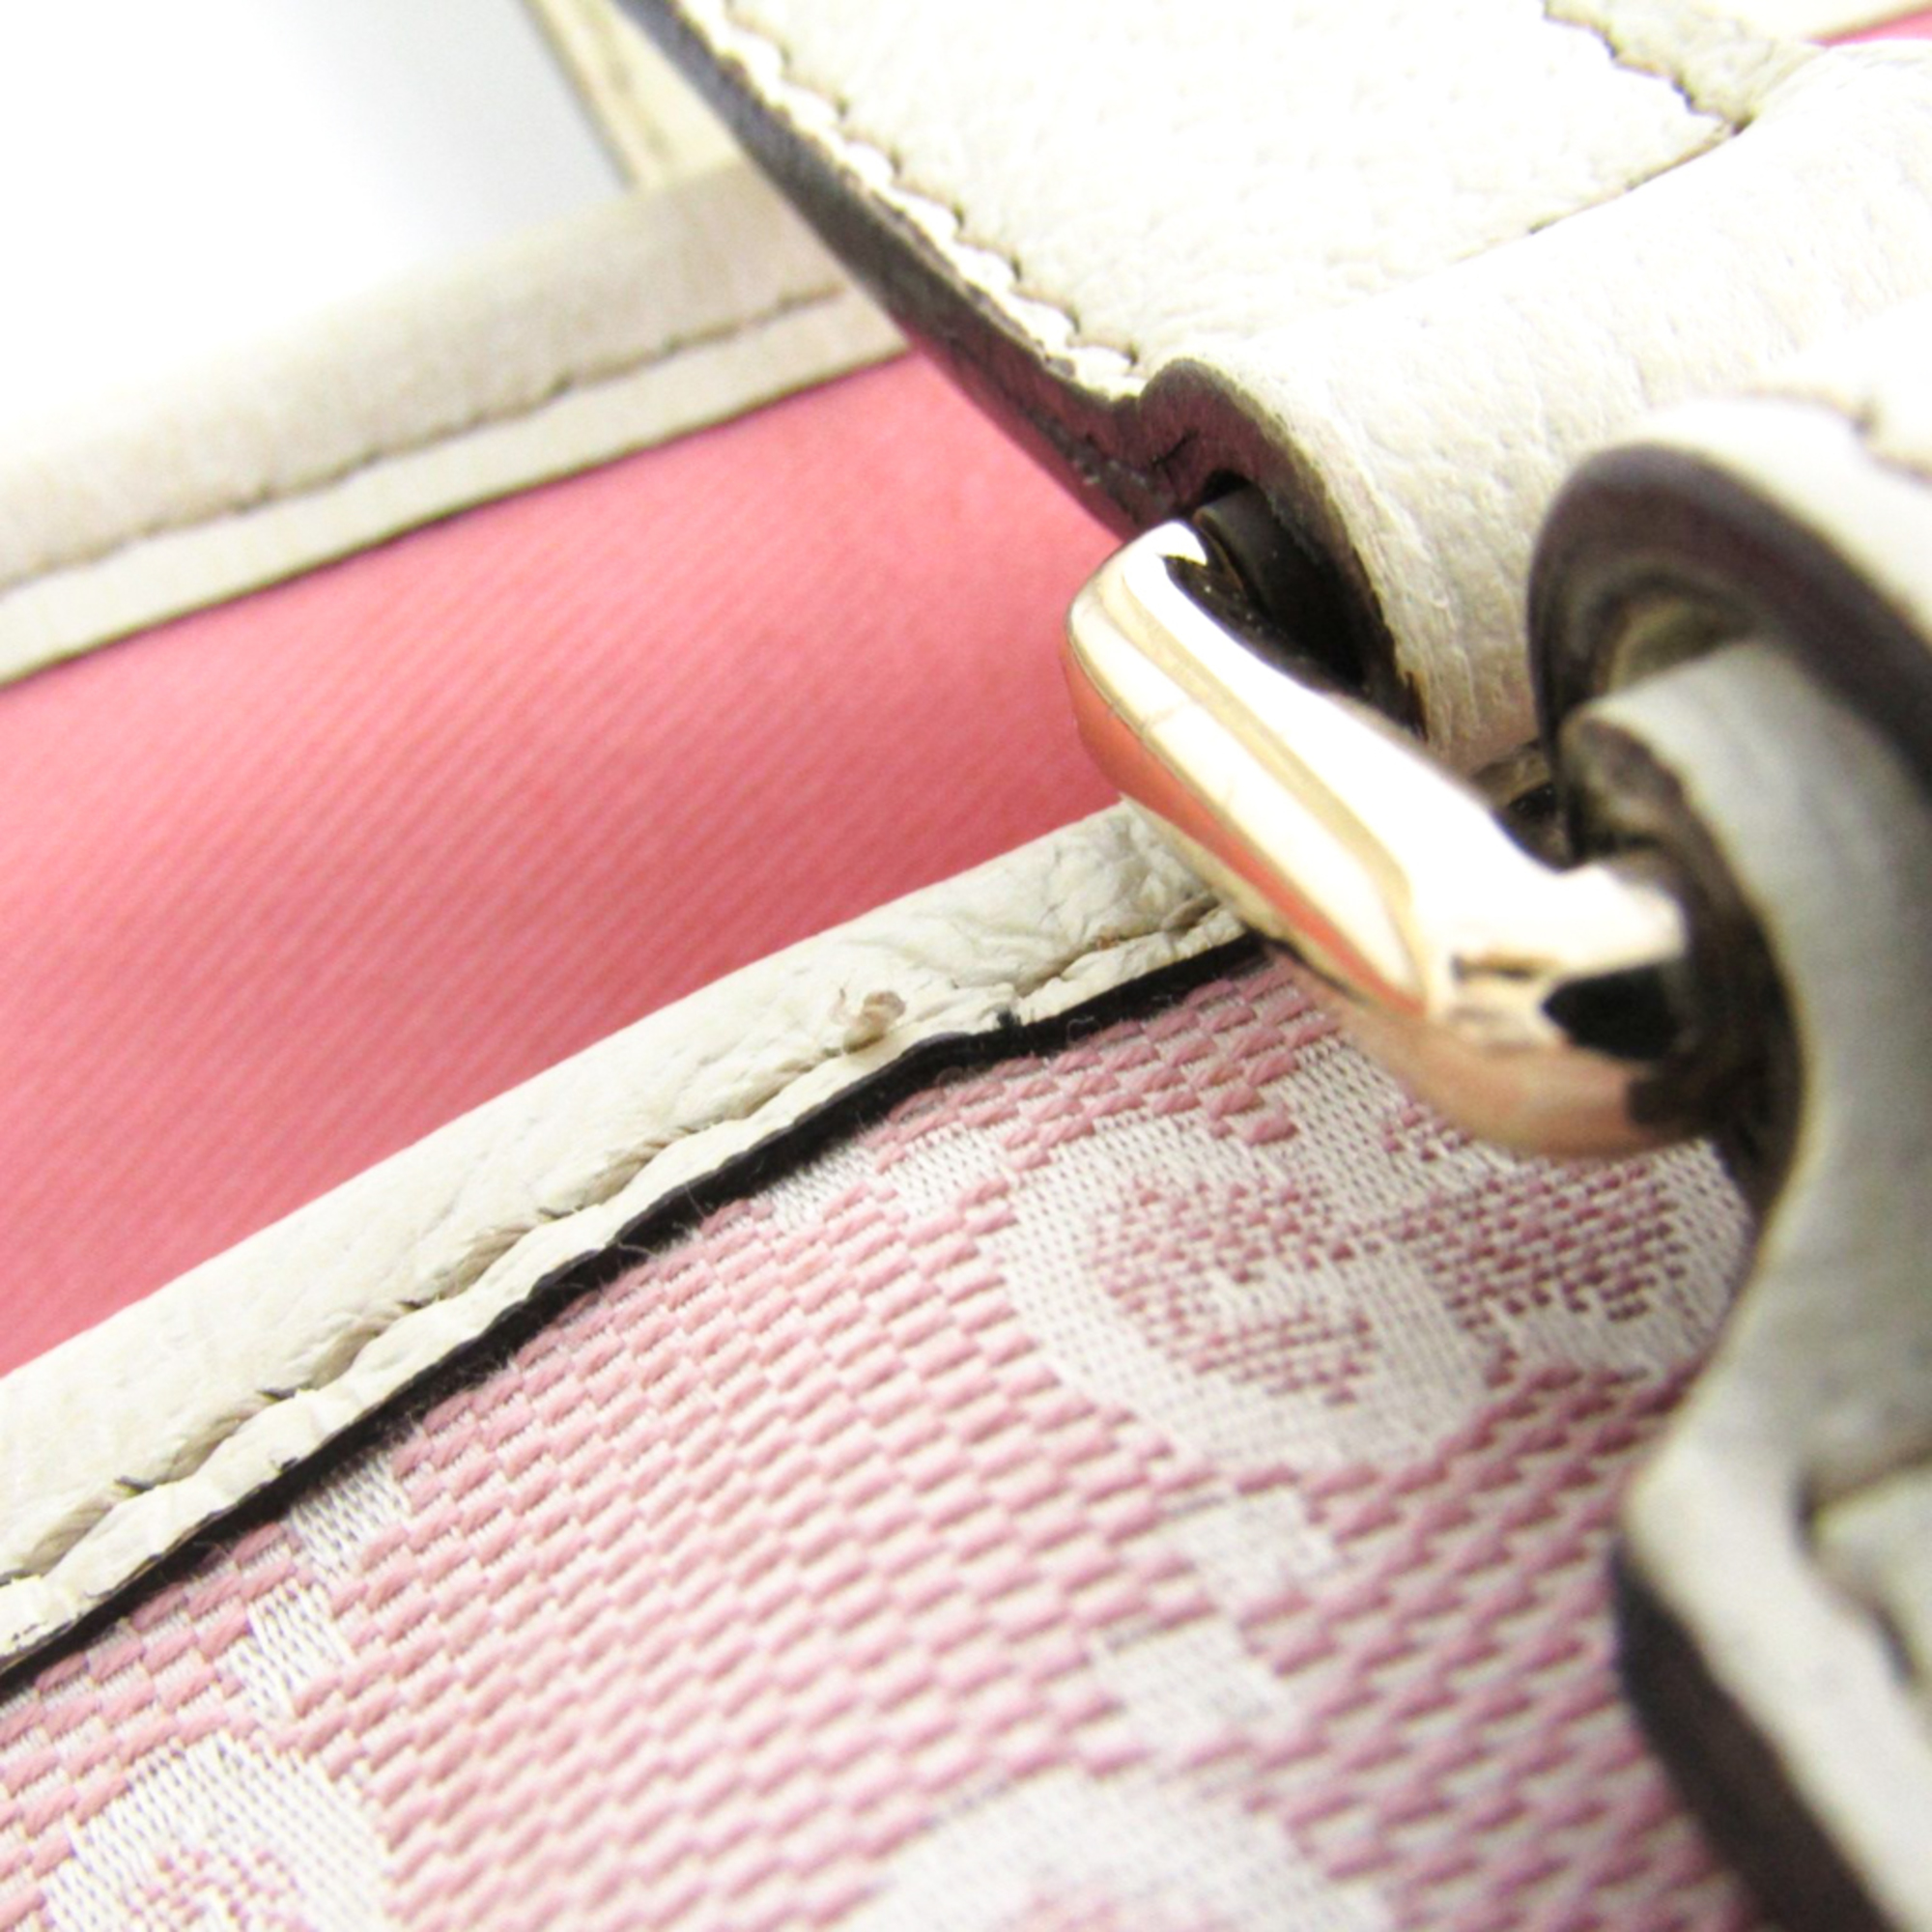 Gucci 137396 Women's GG Canvas Tote Bag White,Baby Pink,Khaki